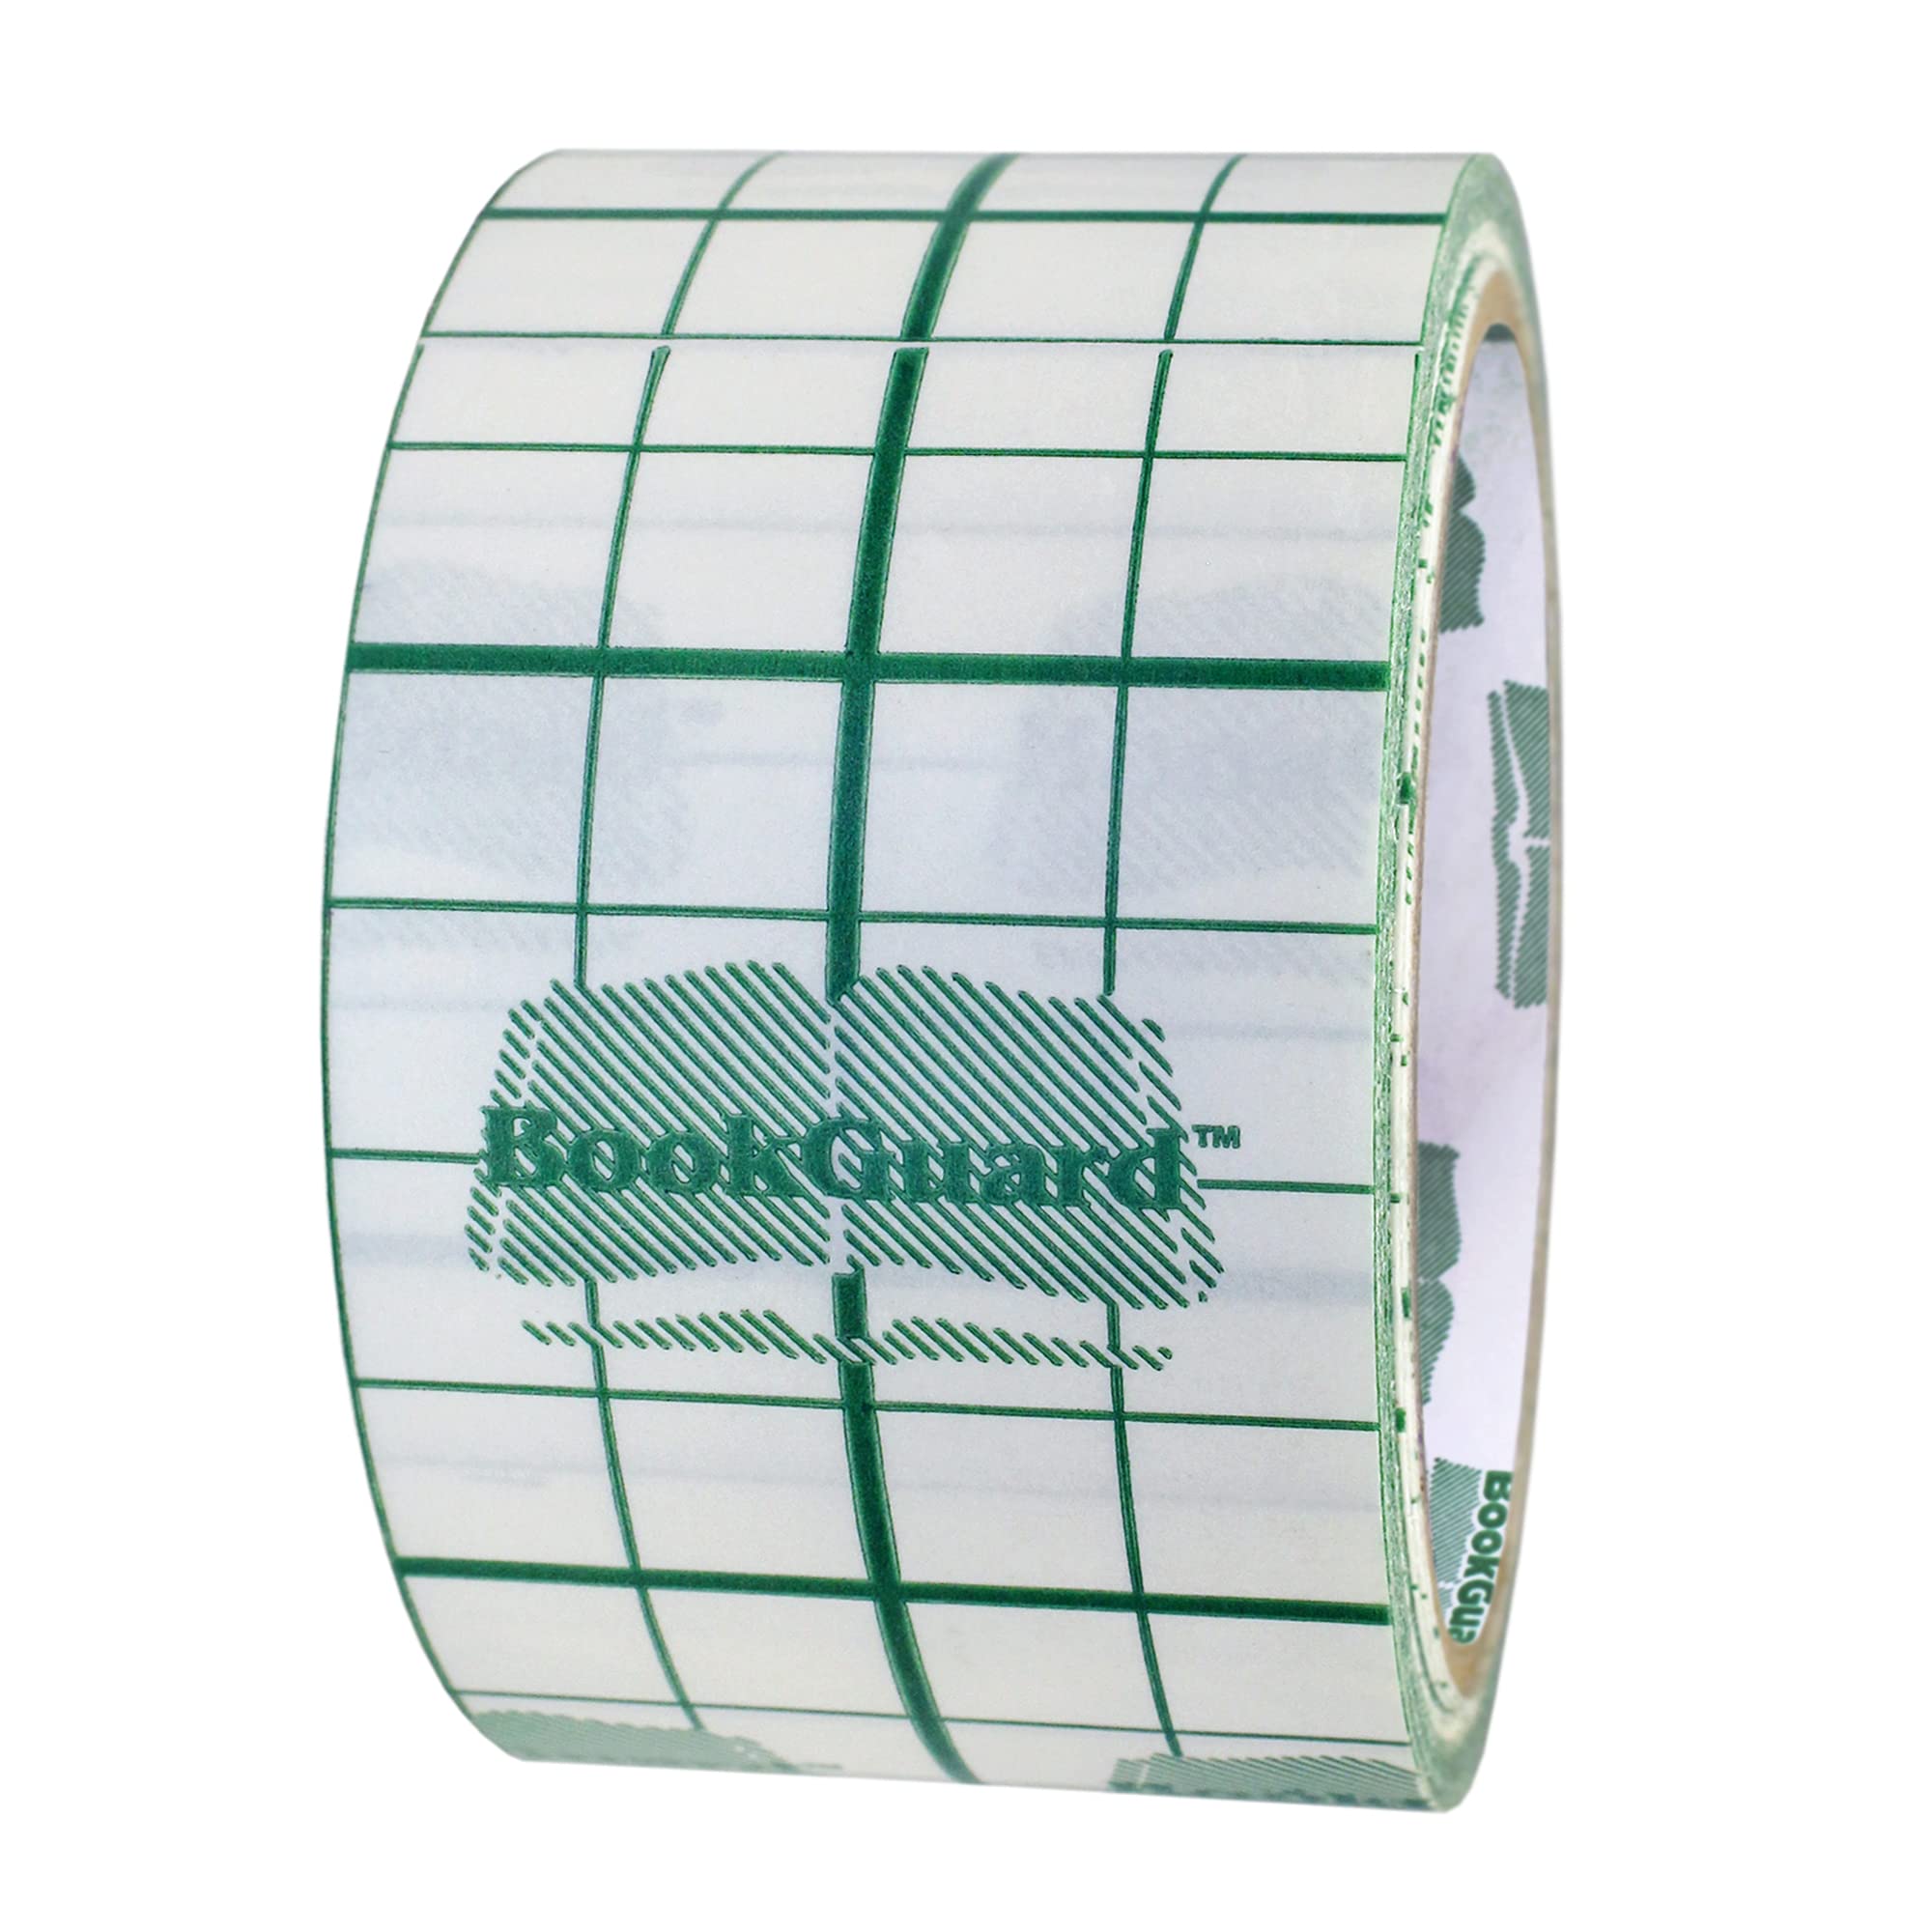 3 BookGuard Vinyl Book Binding Repair Tape with Liner: 10 yds